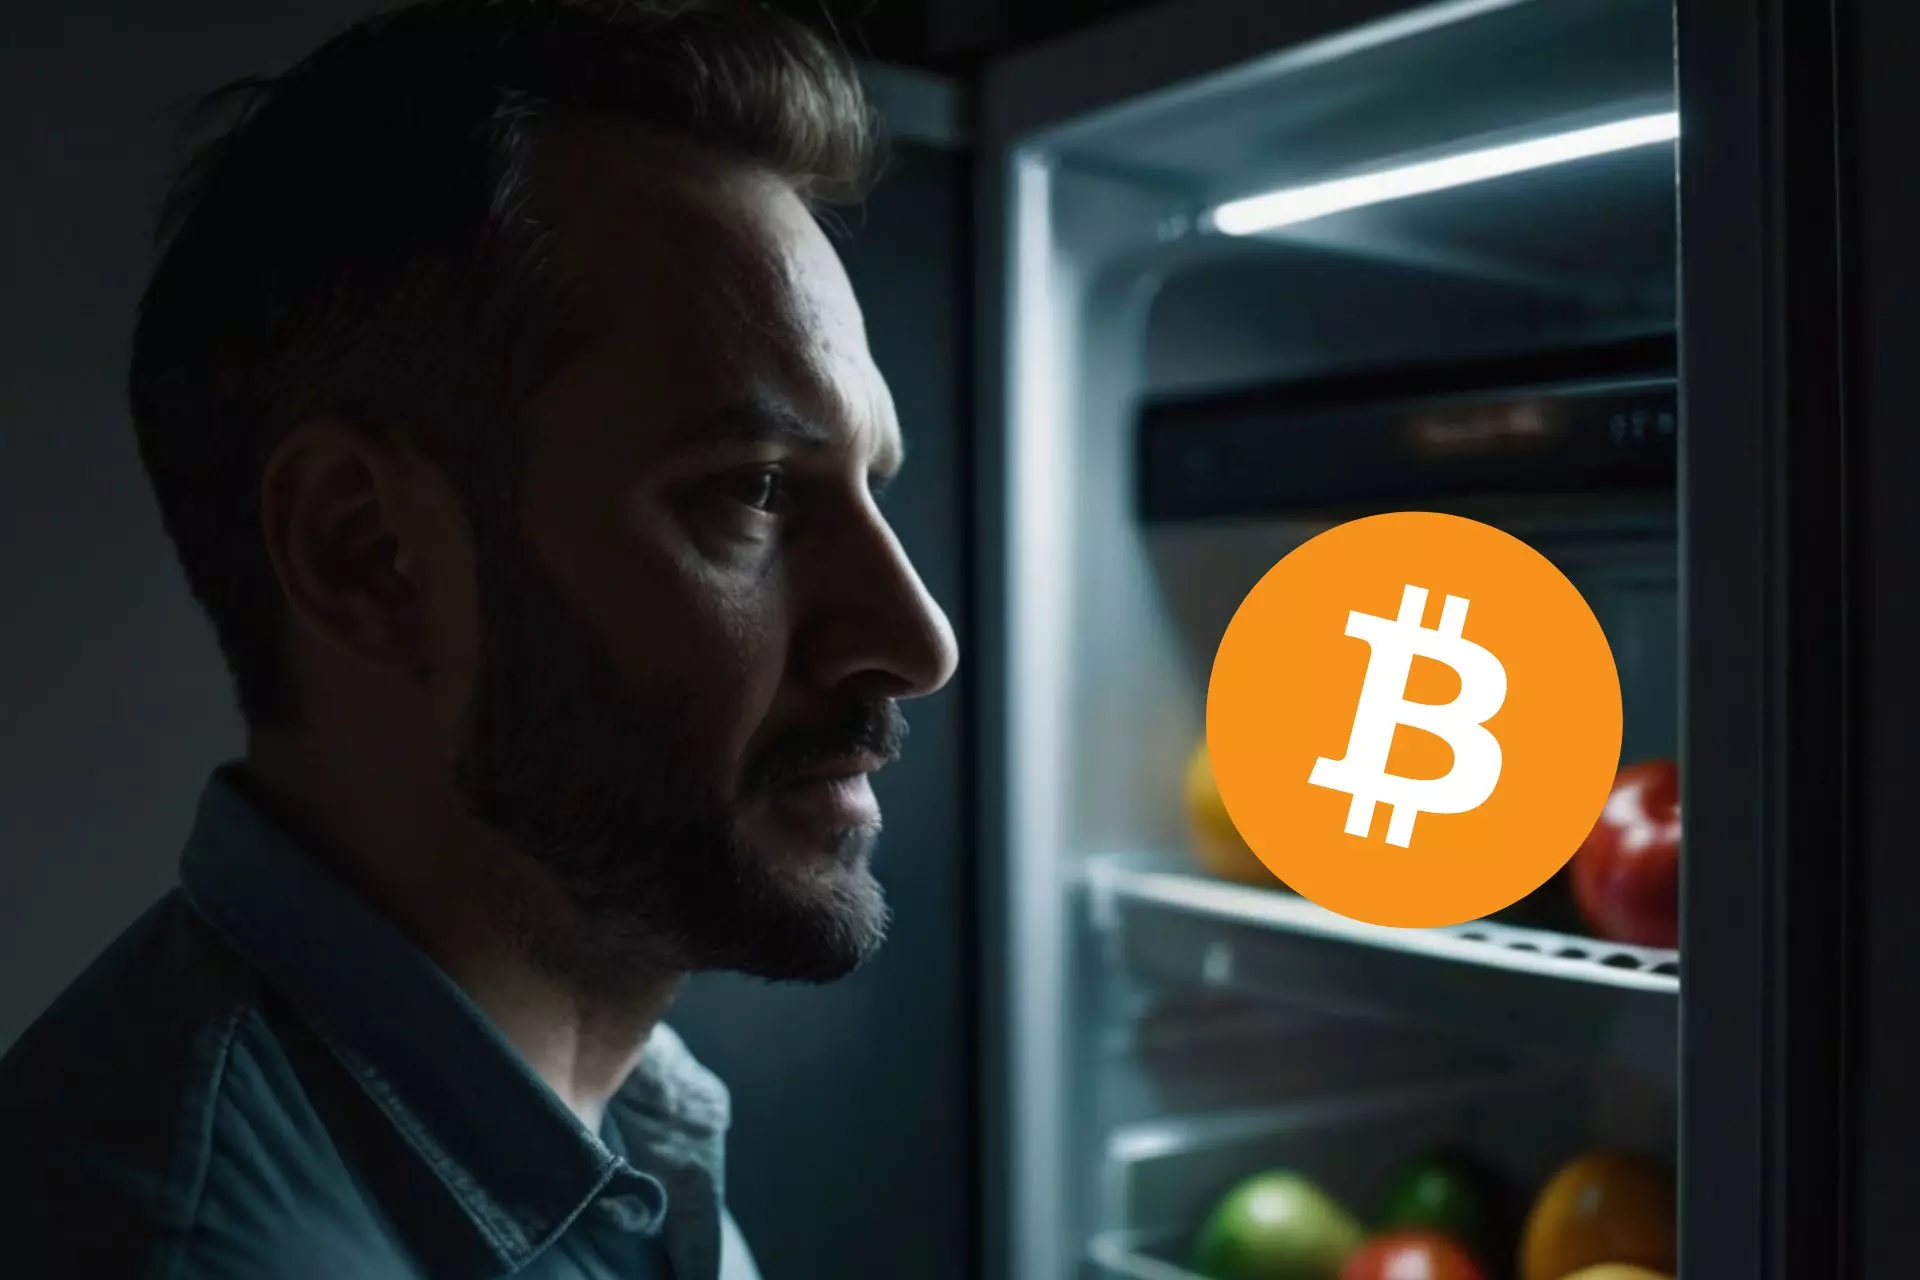 Mężczyzna zagląda do lodówki, w której jest Bitcoin